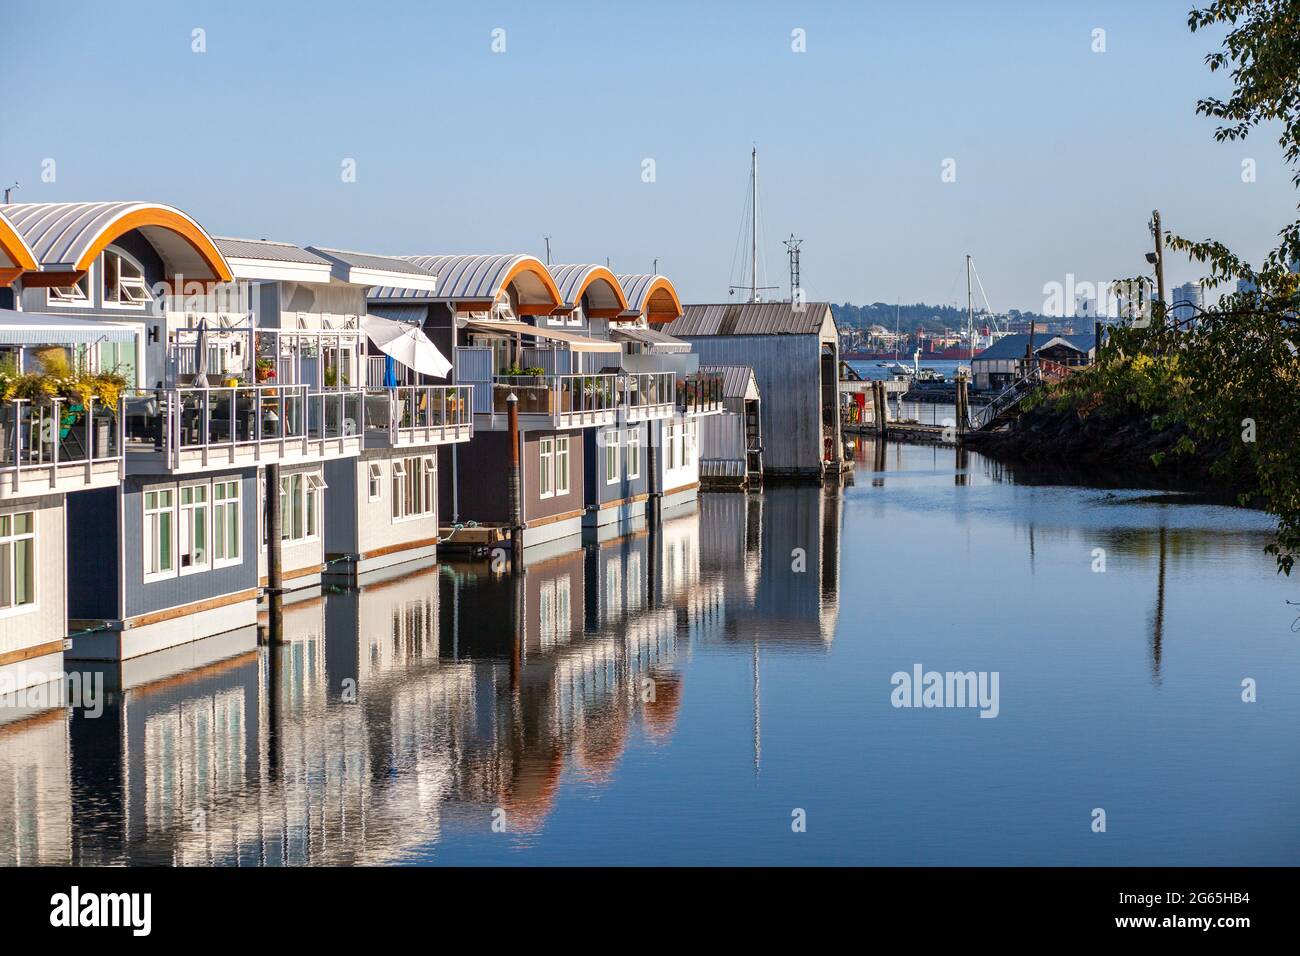 Des bateaux à moteur flottants colorés et mignons bordent les quais de la marina de Mosquito Creek, North Vancouver, Colombie-Britannique. Ce logement alternatif est en pleine croissance Banque D'Images